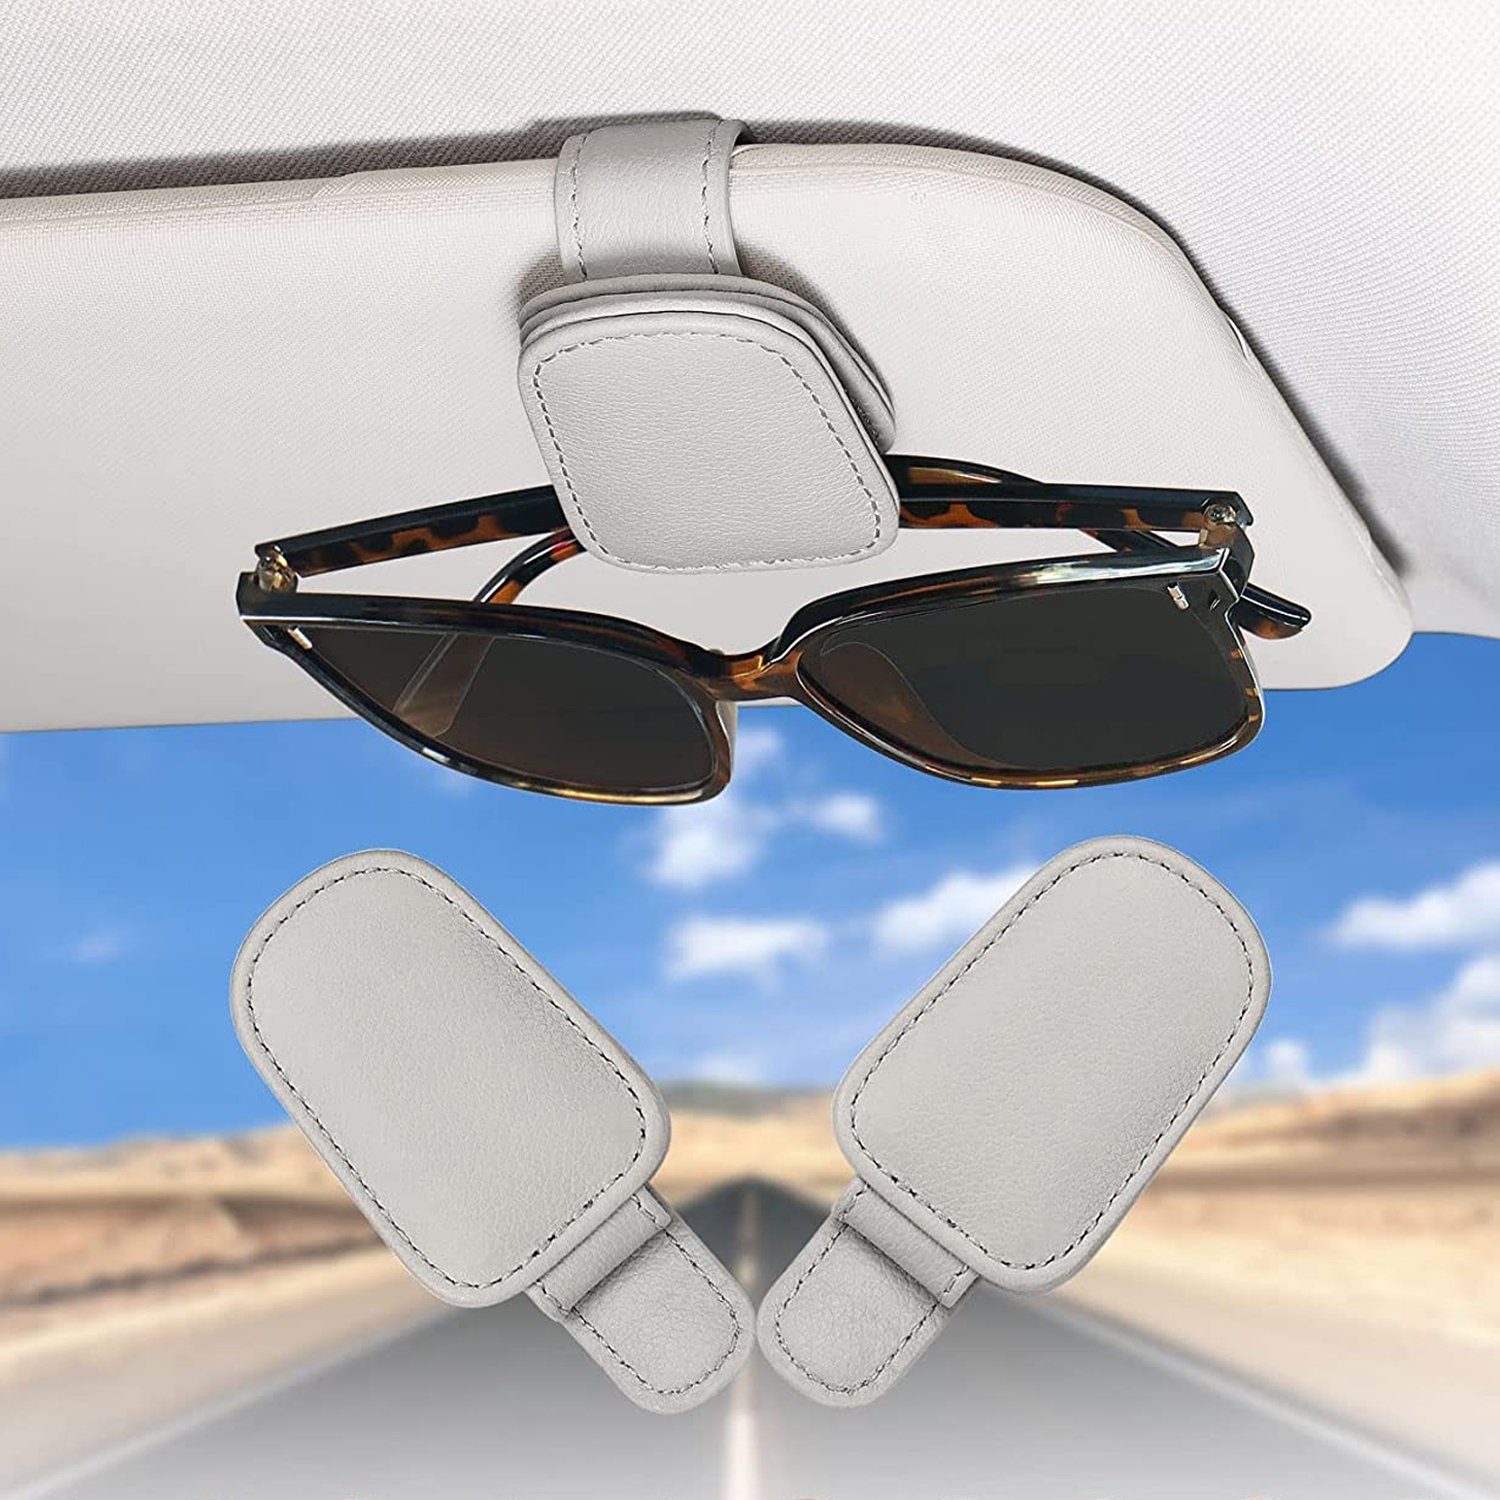 Brillenhalter Sonnenblende, Visier 2 Sonnenbrillenhalterung Autosonnenschutz Pack Grau Auto NUODWELL